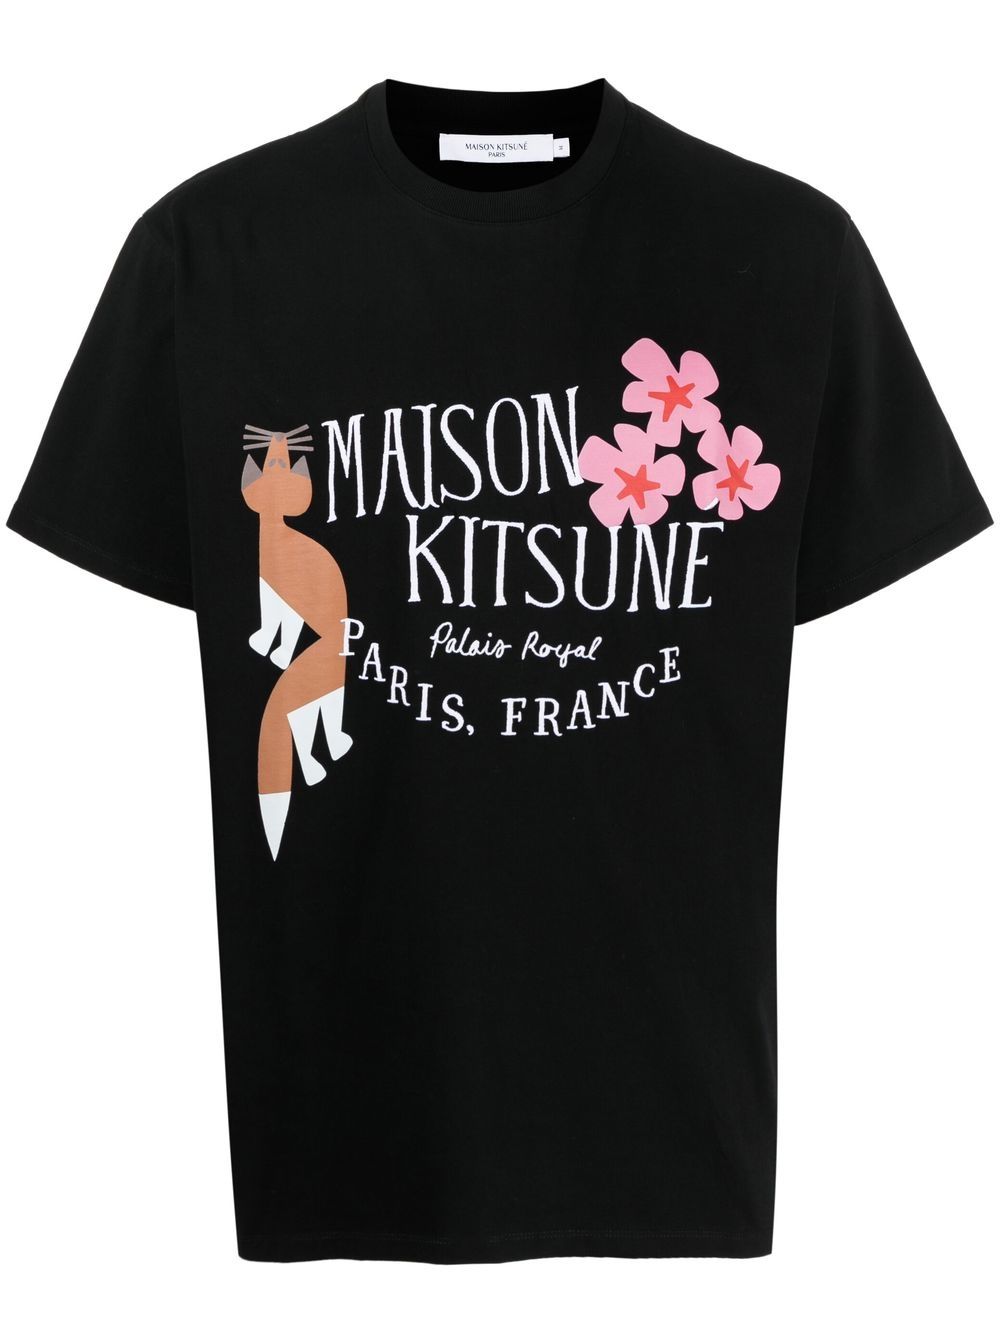 Maison Kitsune x Bill Rebholz Palais Royal printed t-shirt (Size: XS)